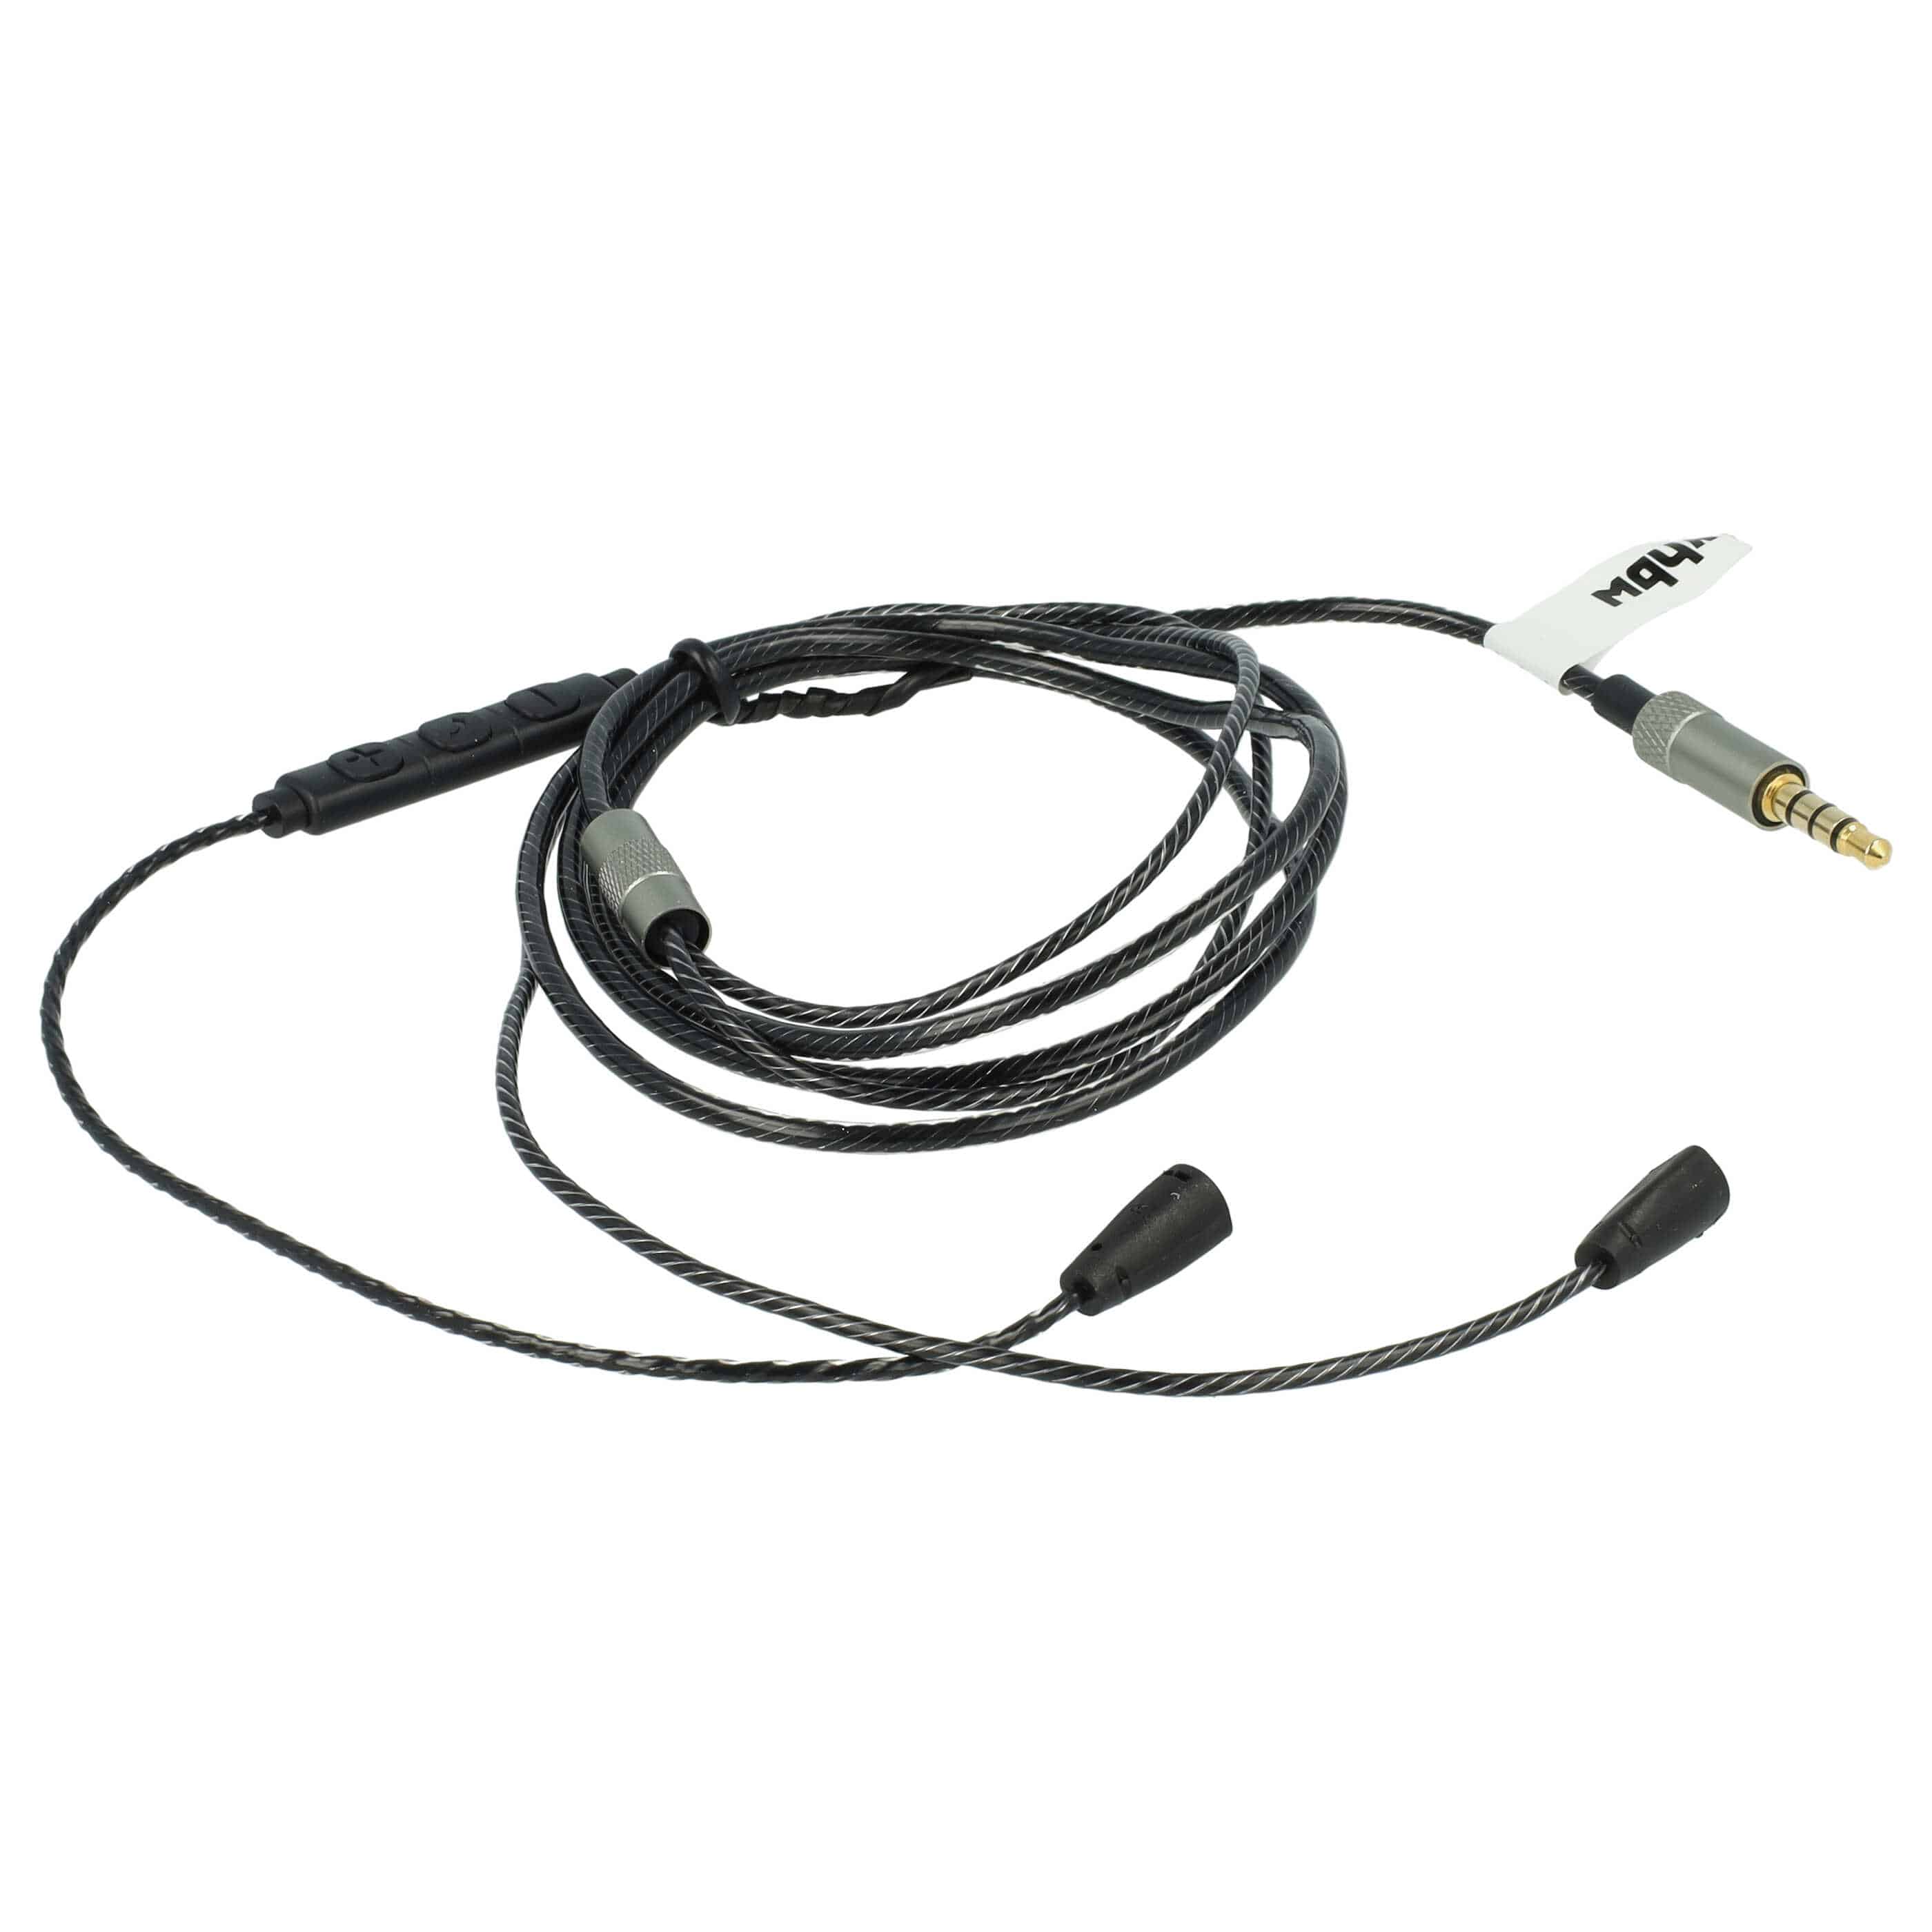 Kopfhörer Kabel passend für Sennheiser IE8, IE80 , 120 cm, schwarz